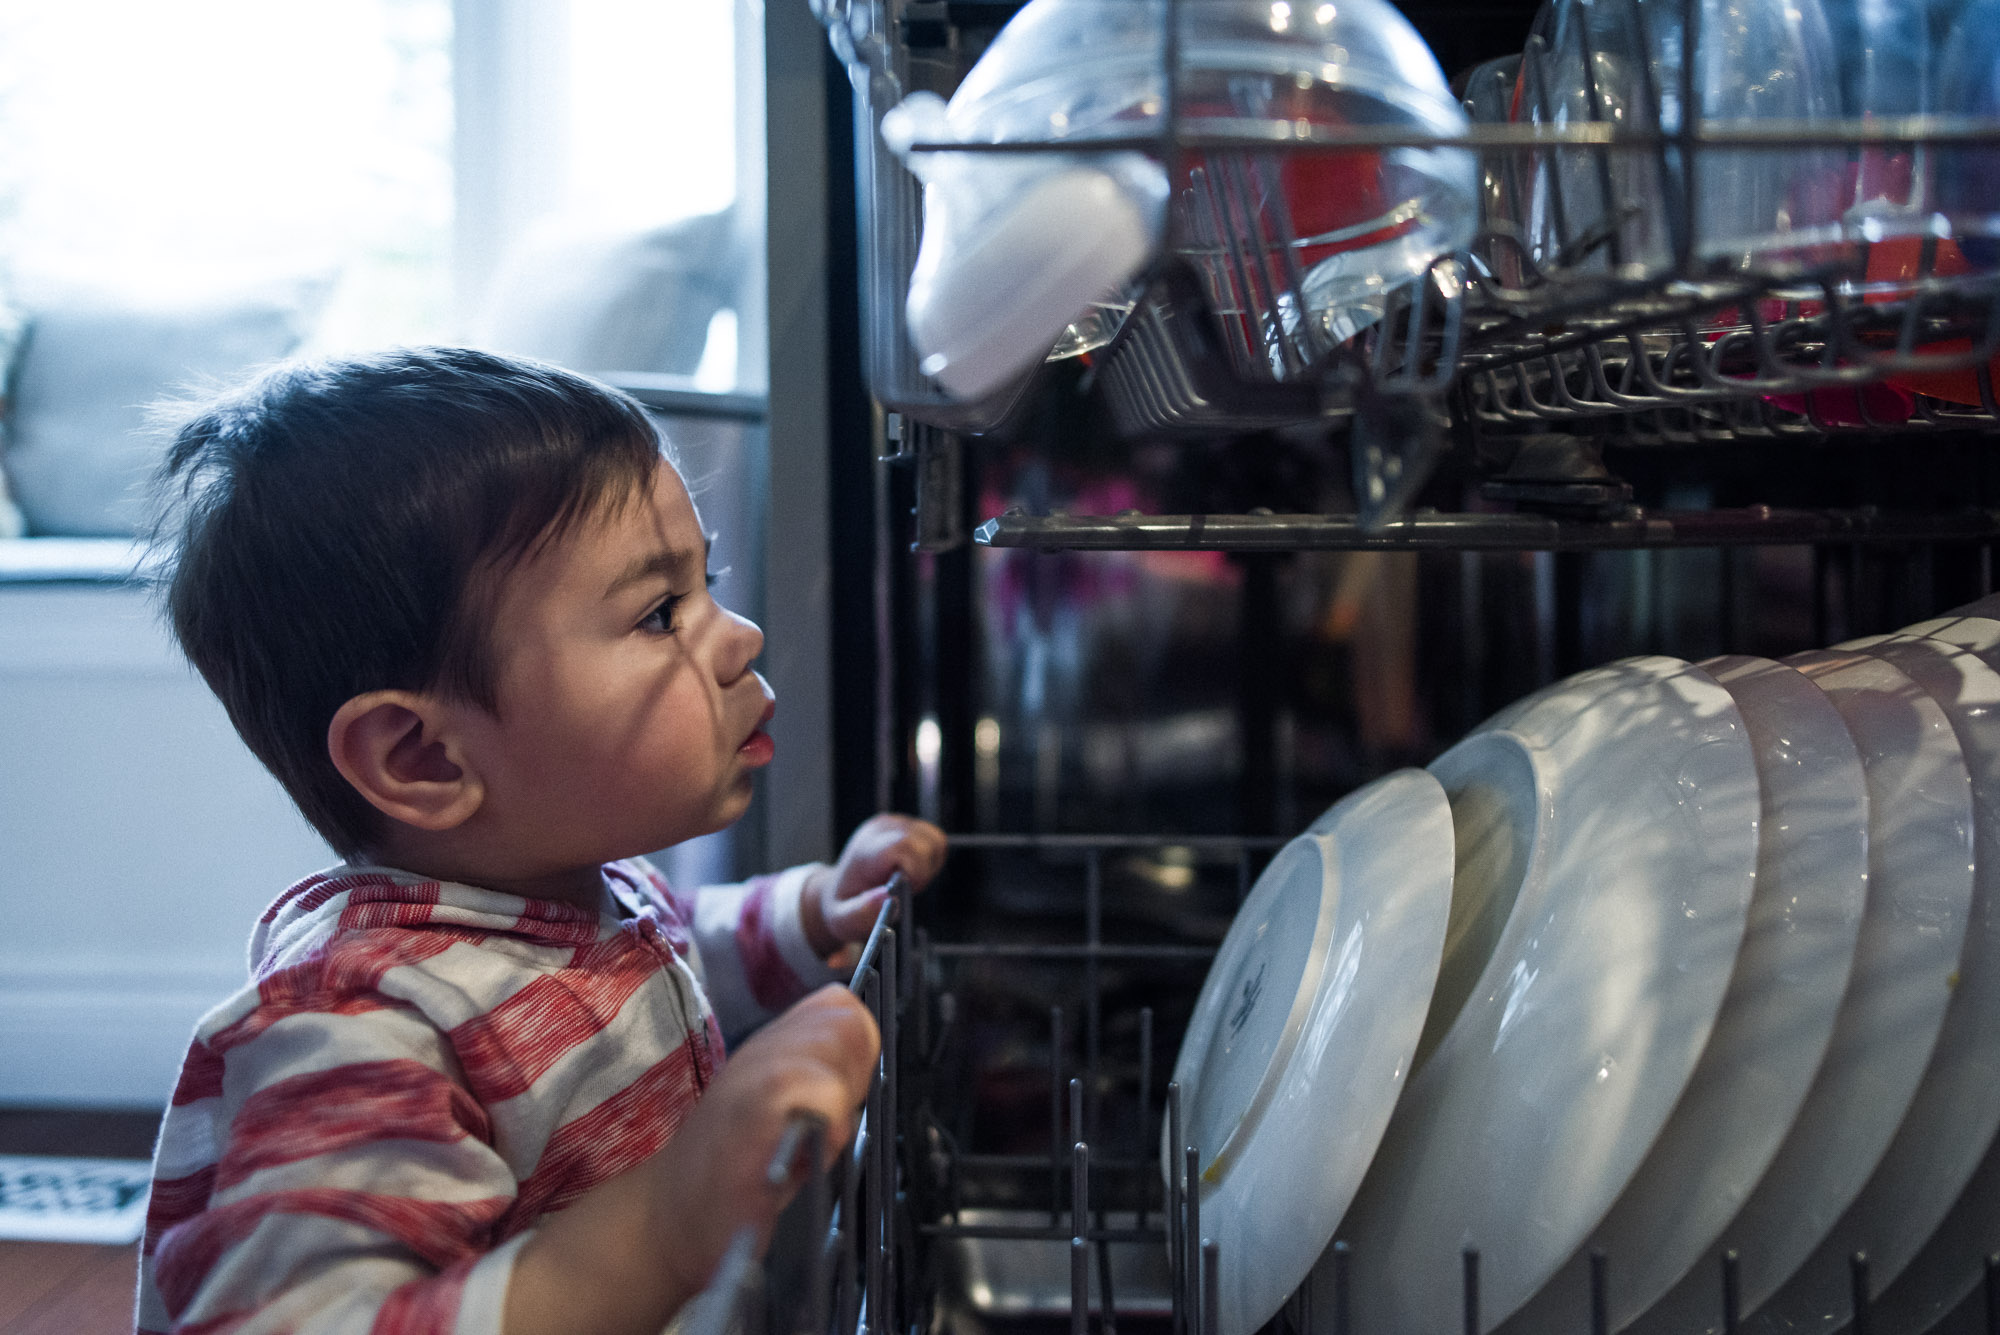 toddler peeks into dishwasher